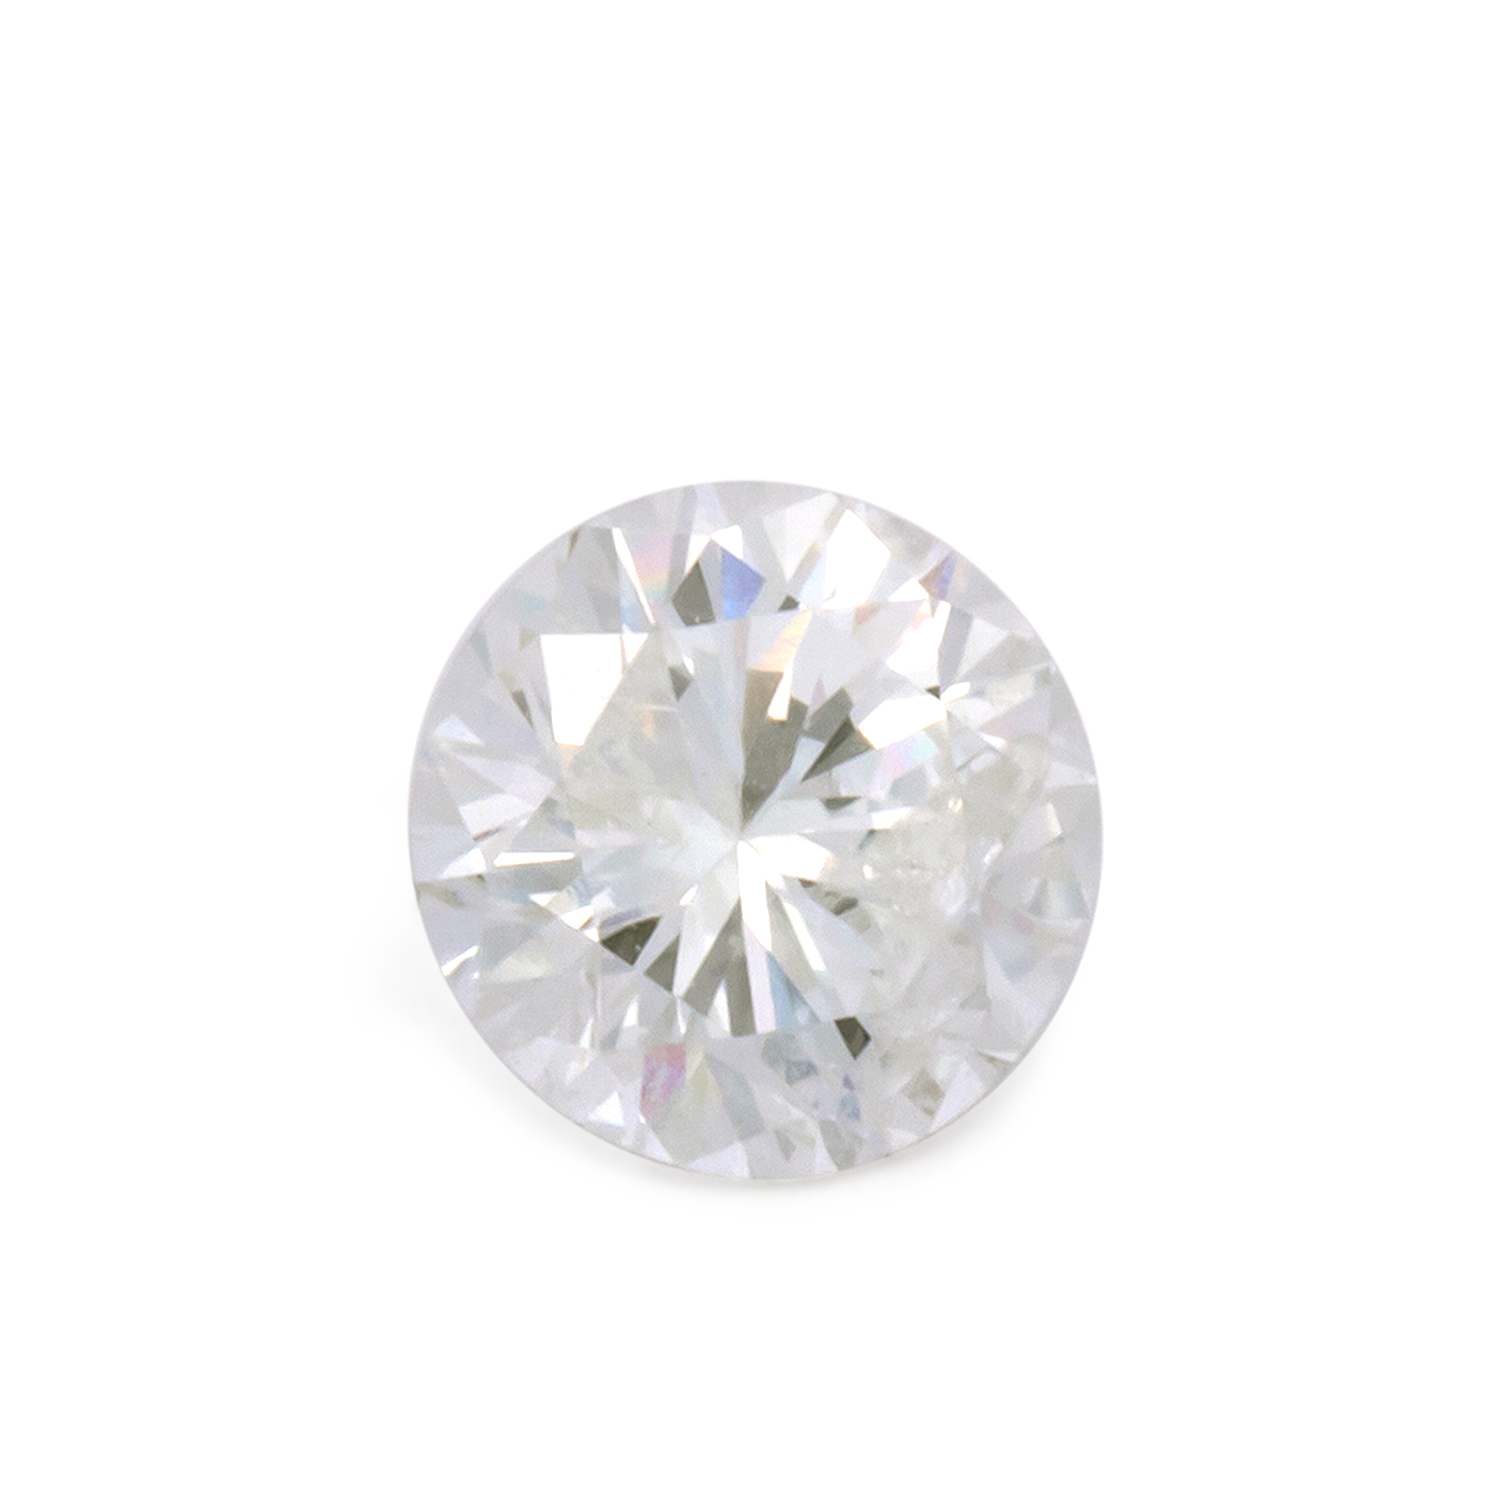 Diamant - leicht getönt gelb, rund, 5.2x5.2 mm, 0.57 cts, Nr. DT1017